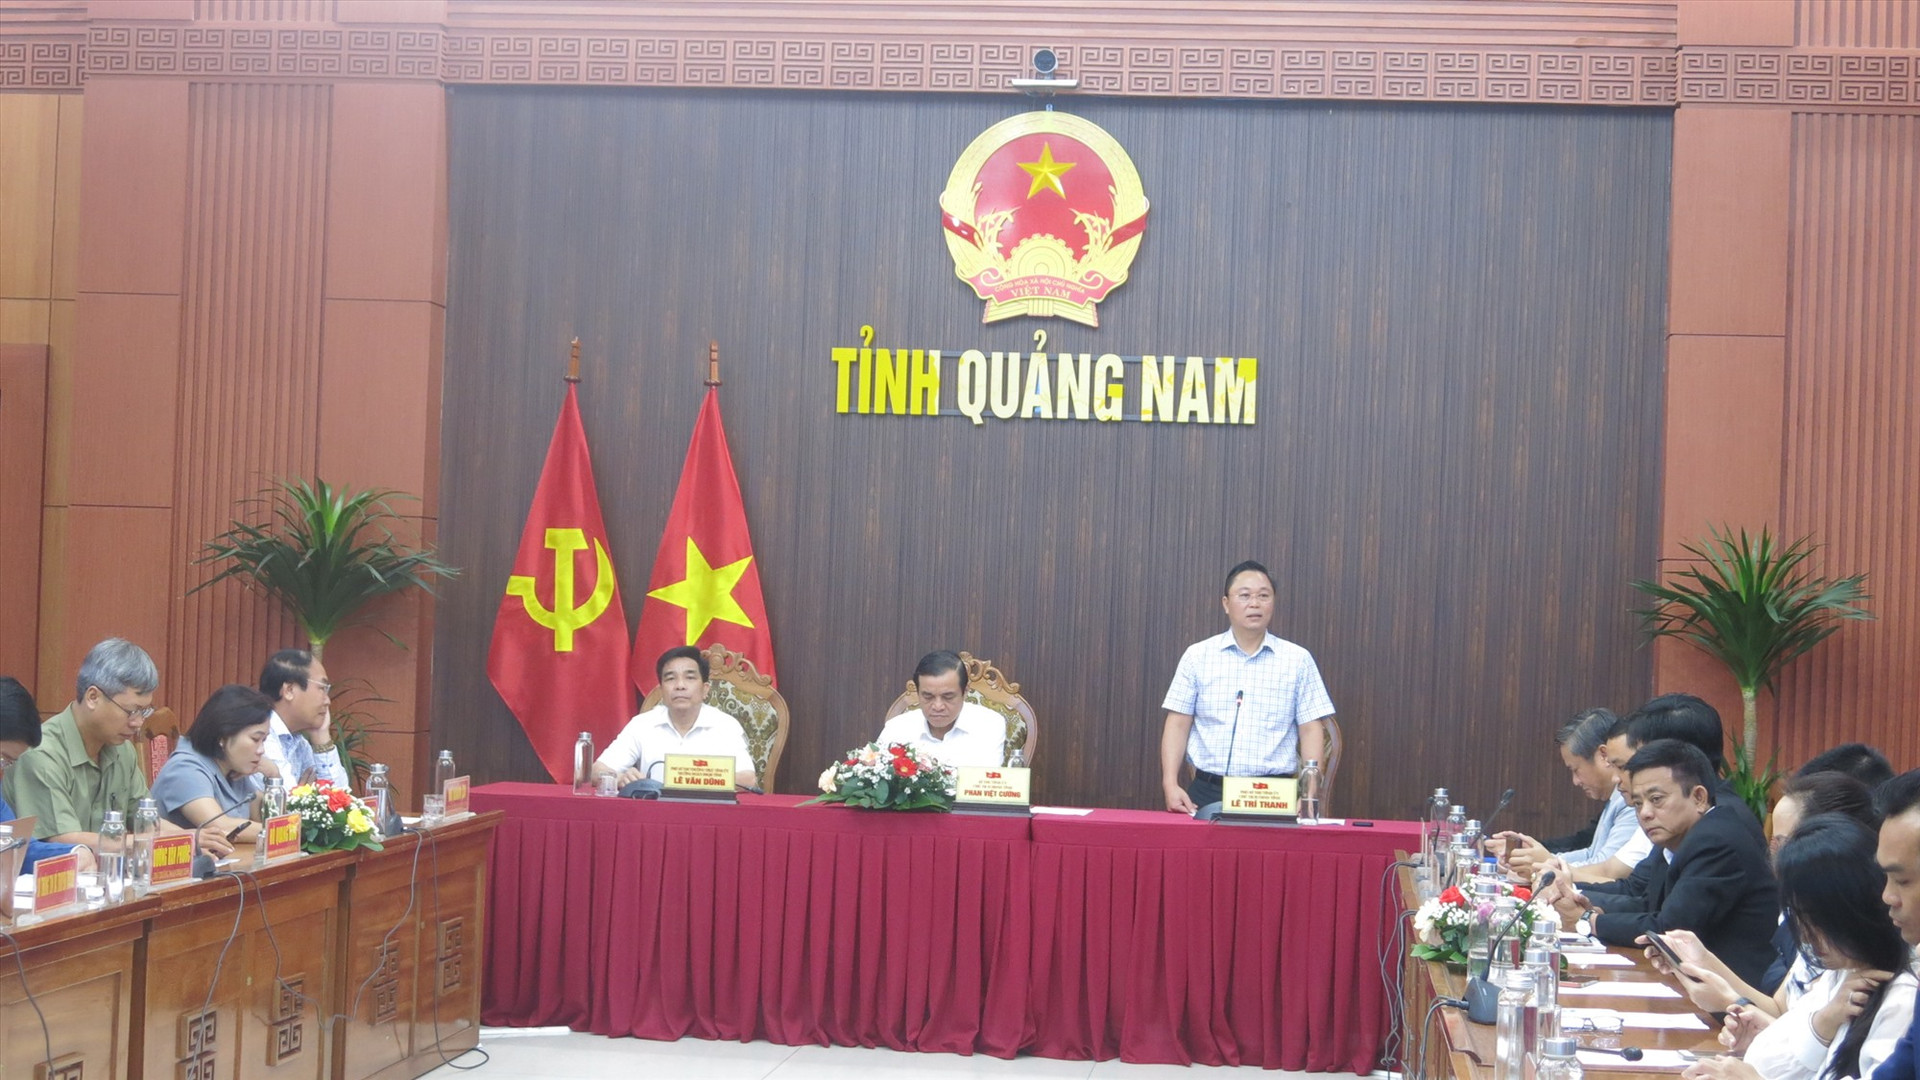 Chủ tịch UBND tỉnh Lê Trí Thanh cho hay chính quyền sẽ thể hiện vai trò kiến tạo, hành động vì sự lớn mạnh của cộng đồng doanh nghiệp, doanh nhân.